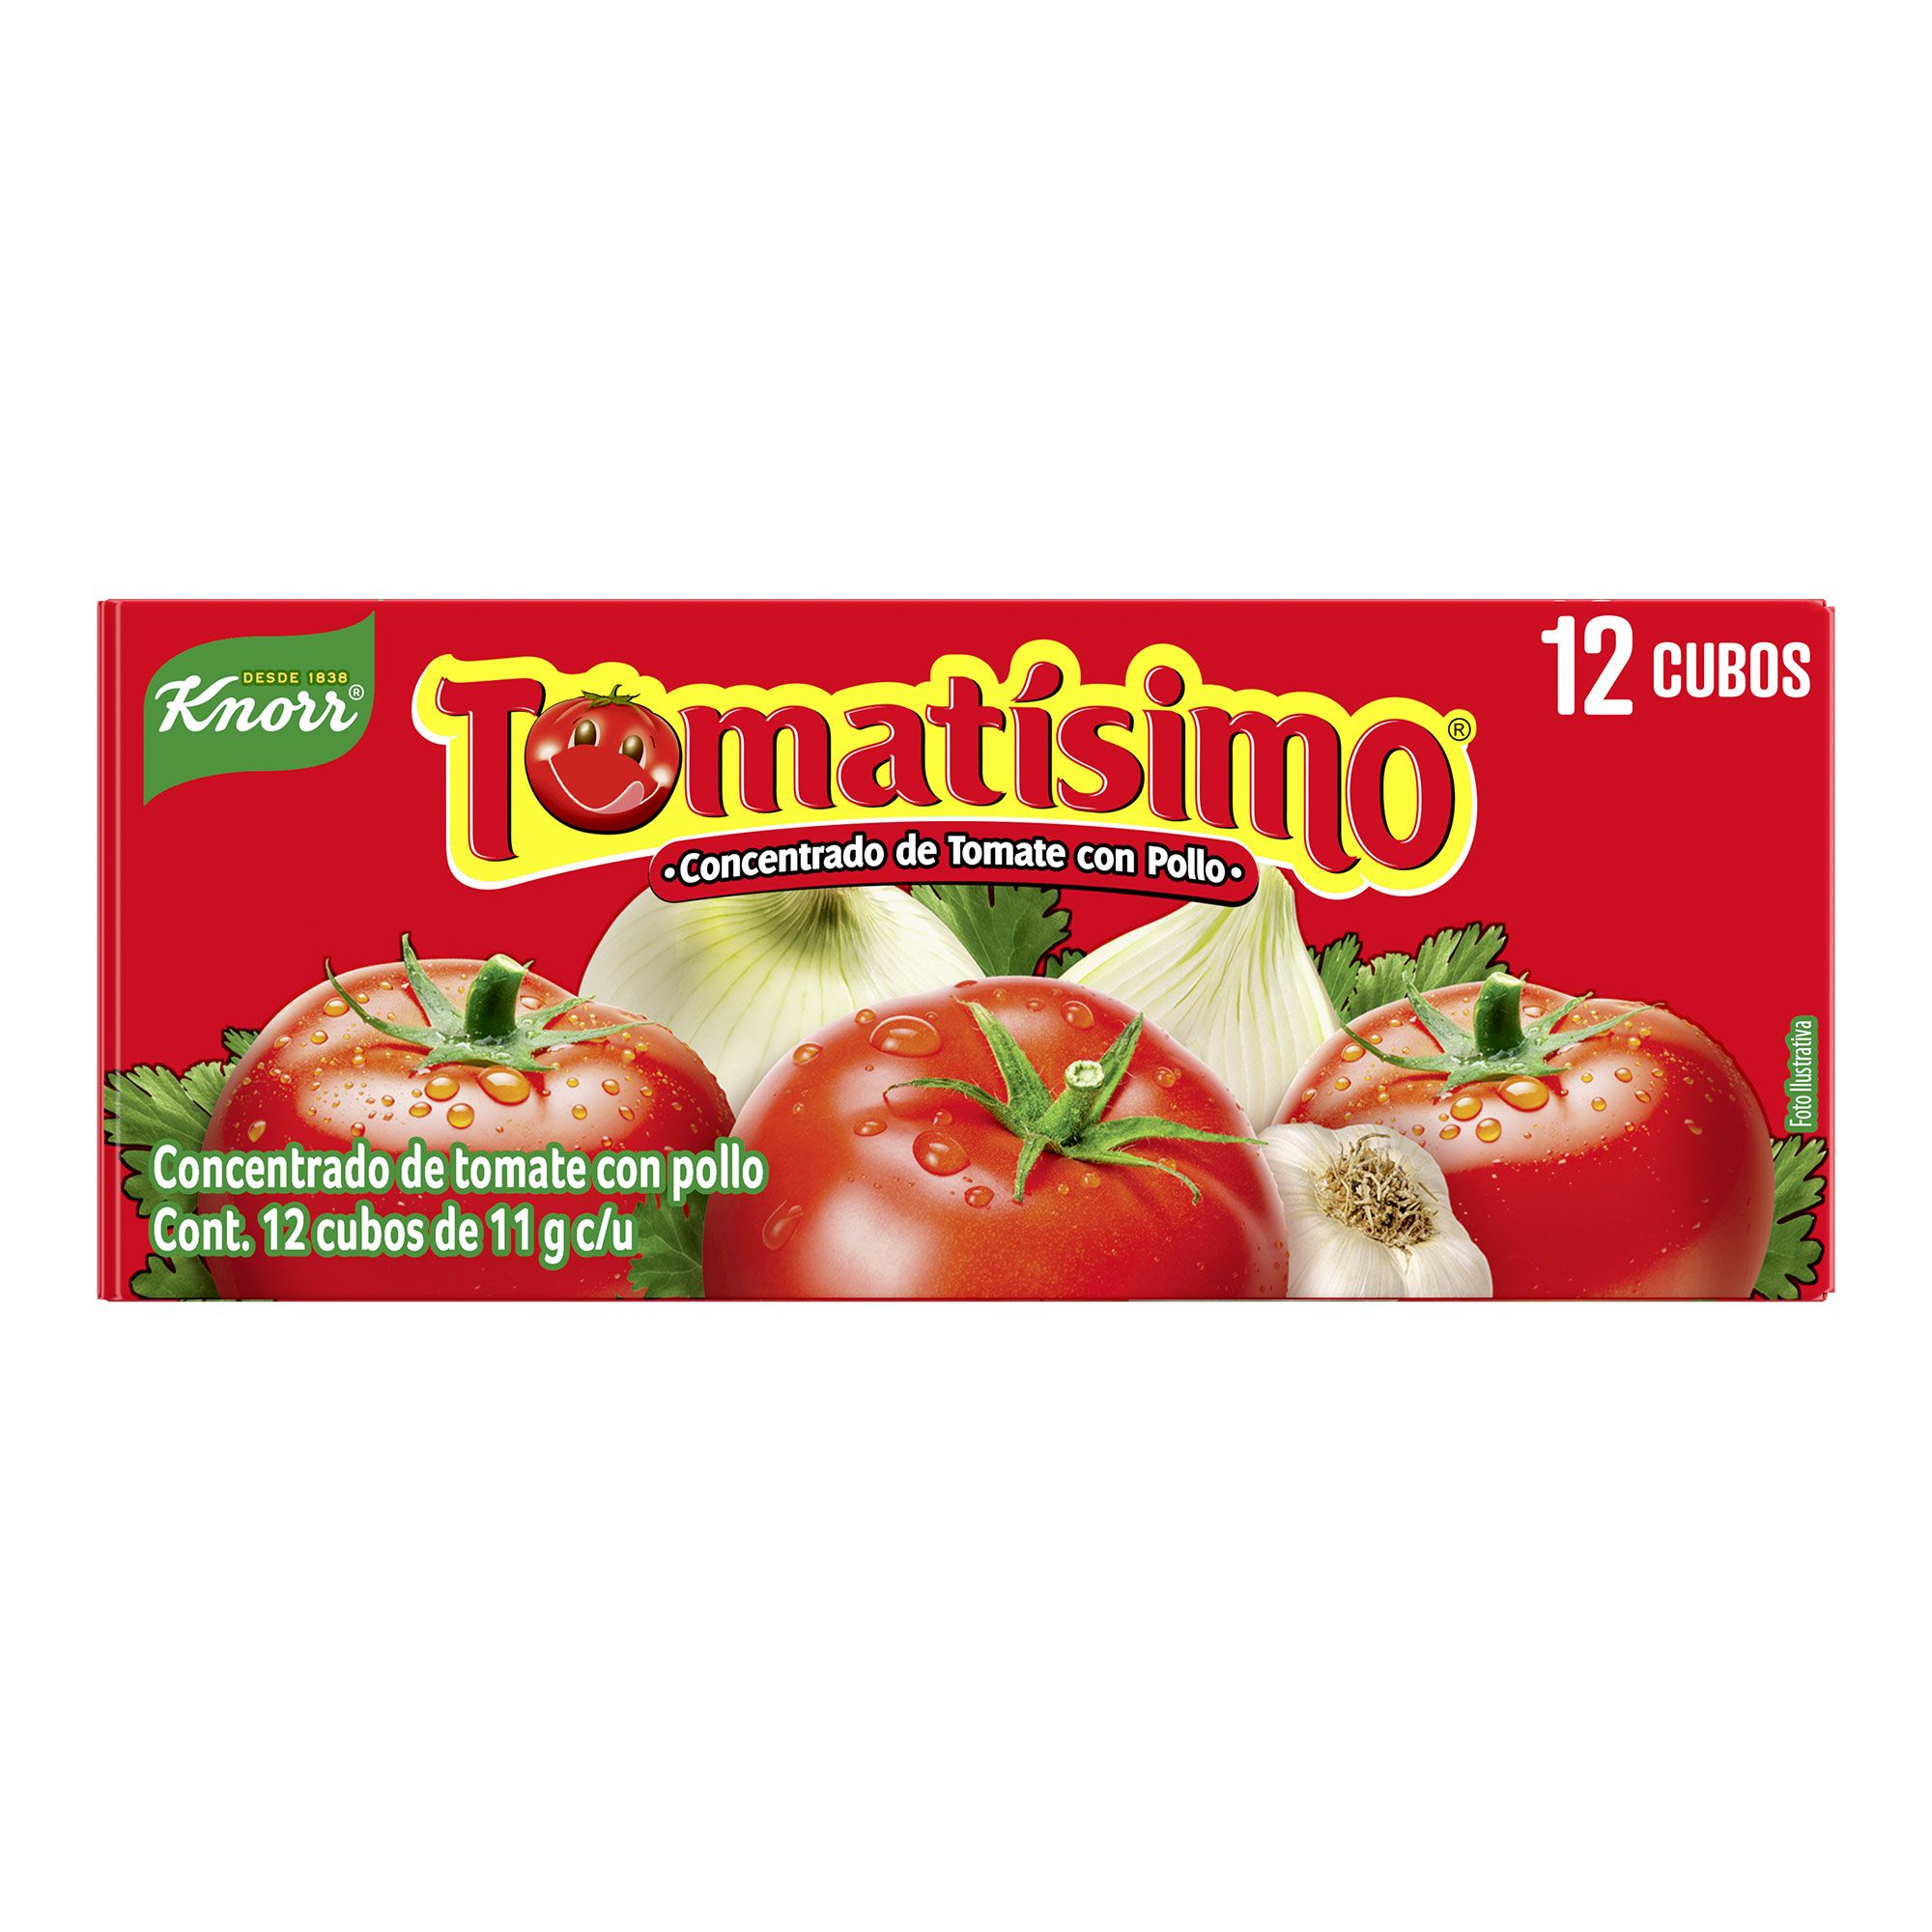 Cocina con Marta. Recetas fáciles, rápidas y caseras: Cómo aprovechar el tomate concentrado.